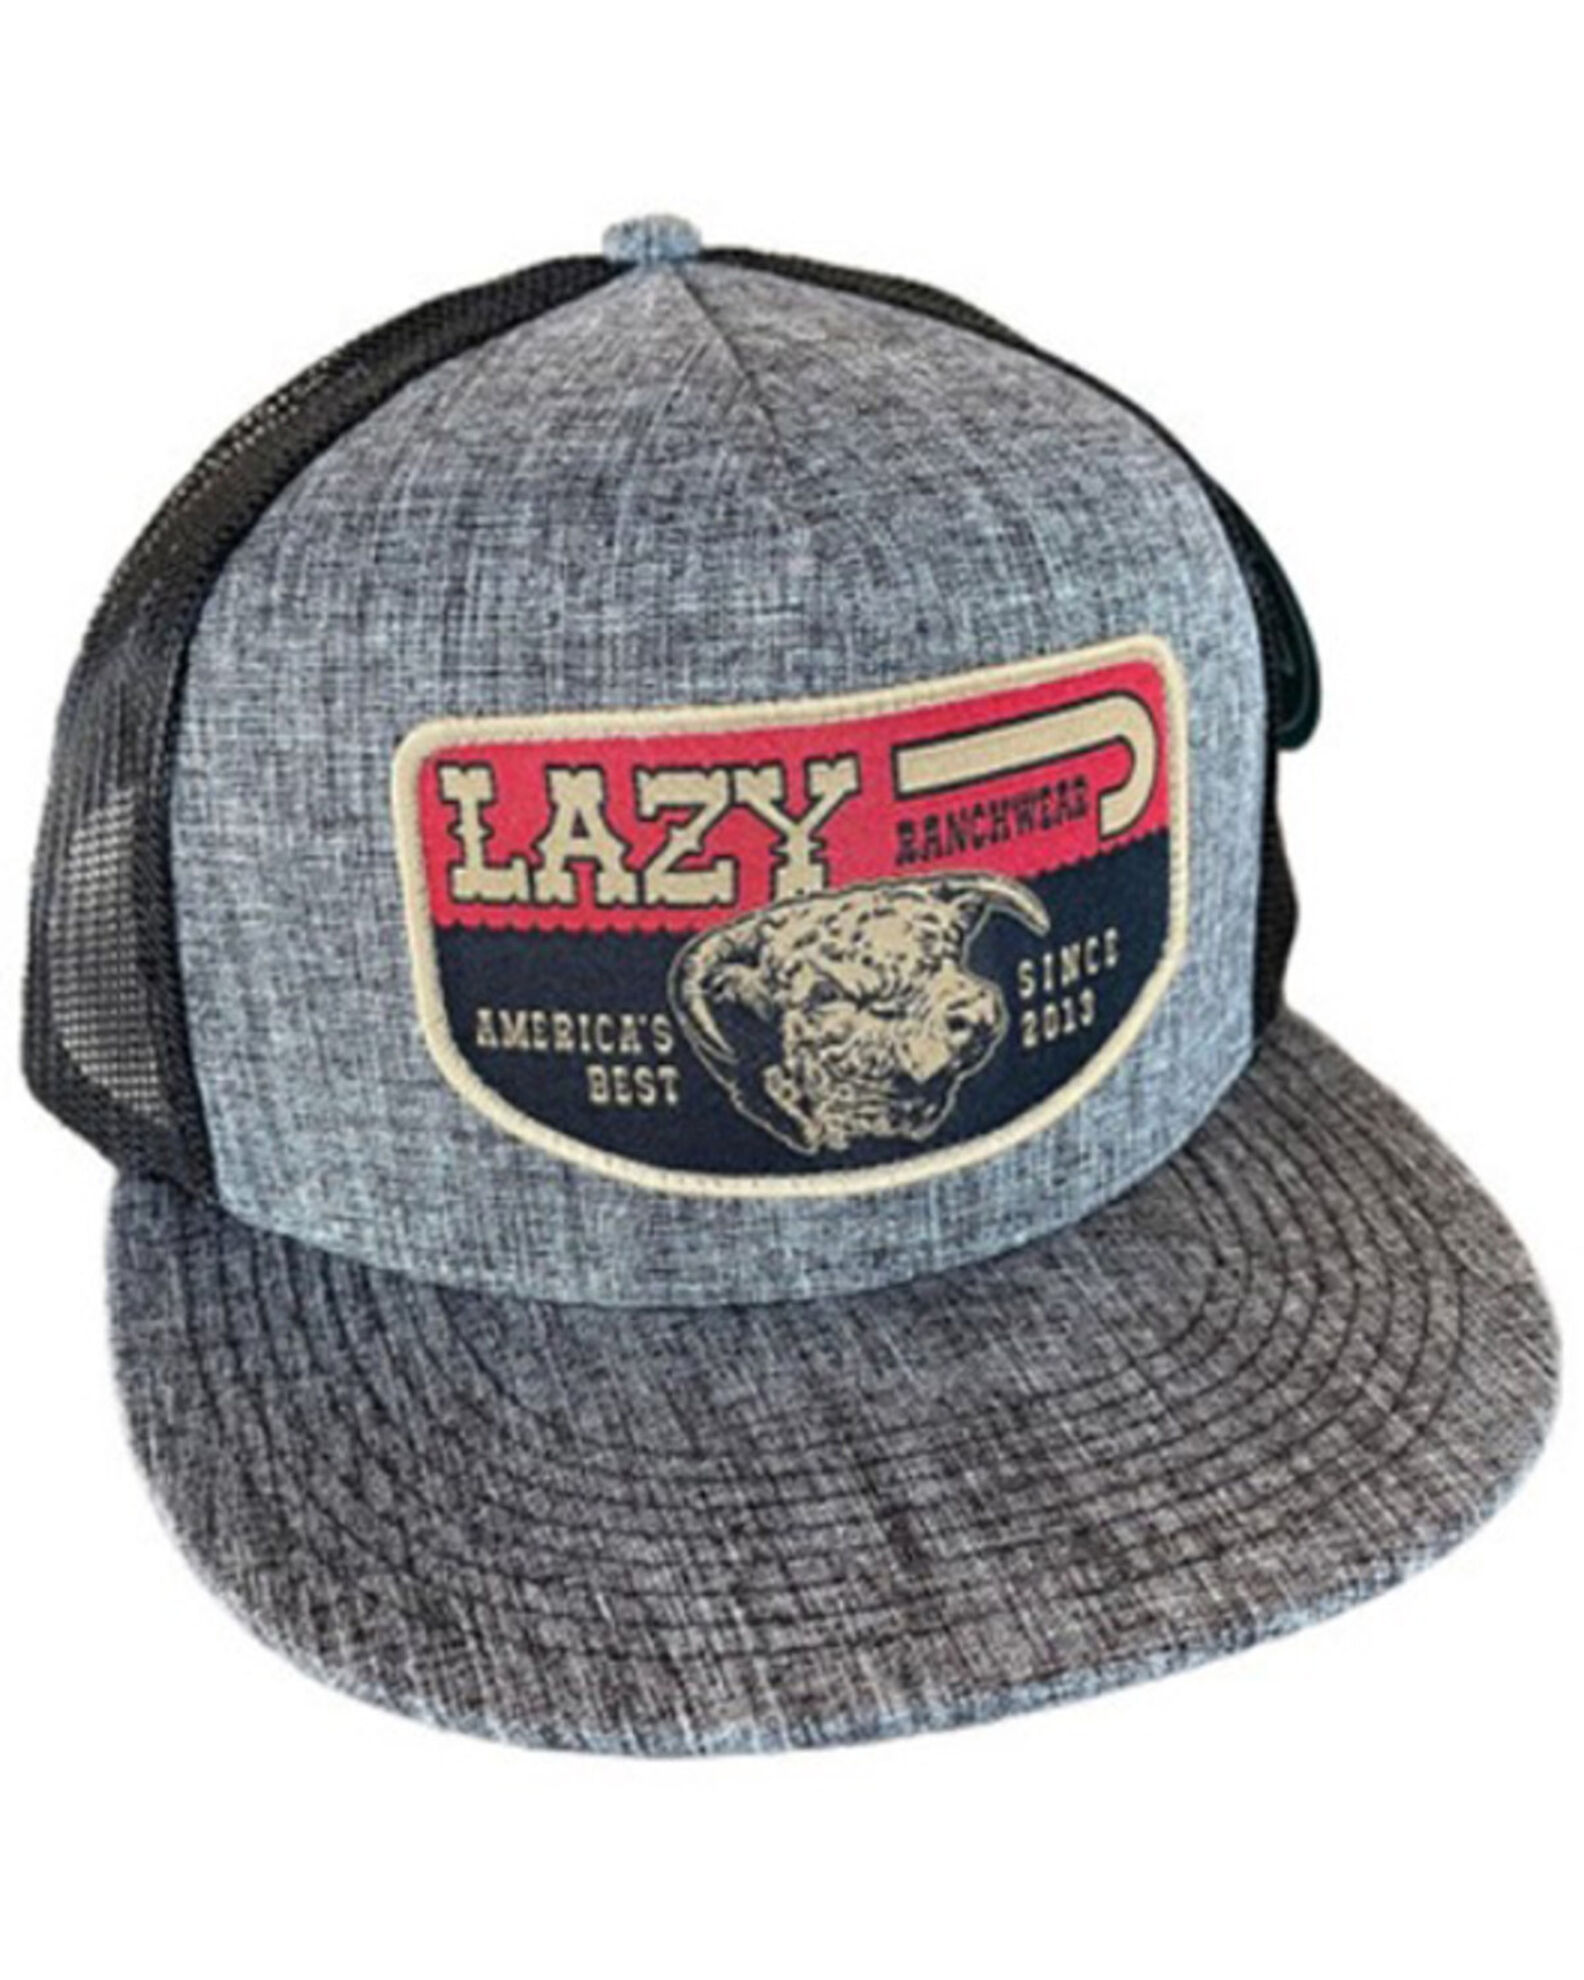 Lazy J Ranch Wear Men's America's Best Patch Trucker Cap